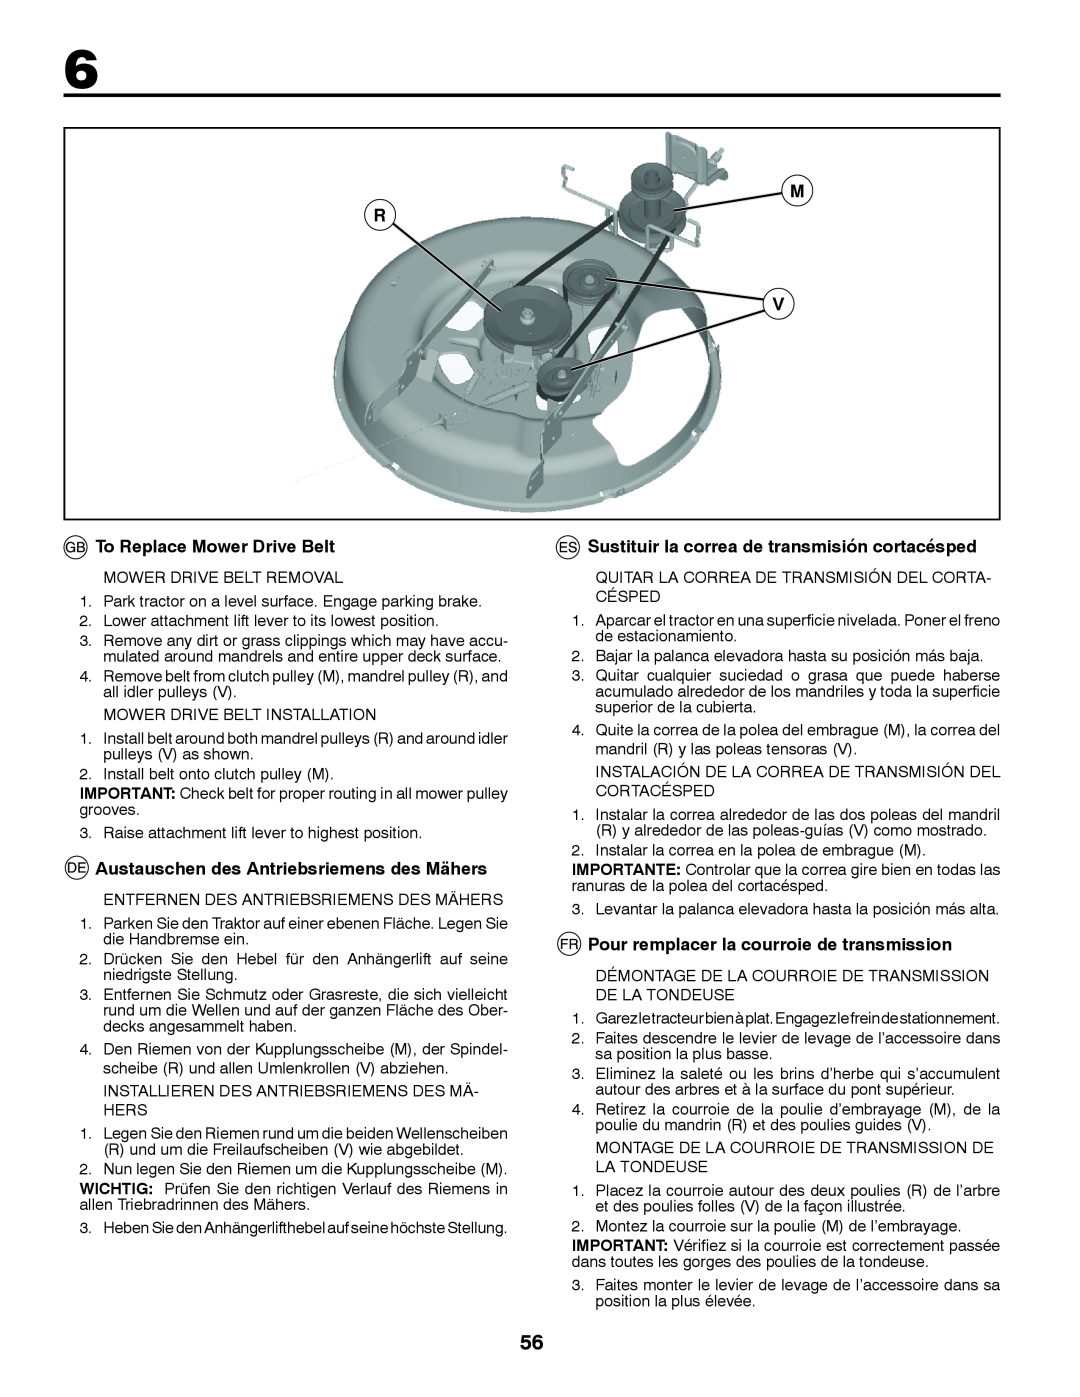 Partner Tech P11577 instruction manual To Replace Mower Drive Belt, Austauschen des Antriebsriemens des Mähers 